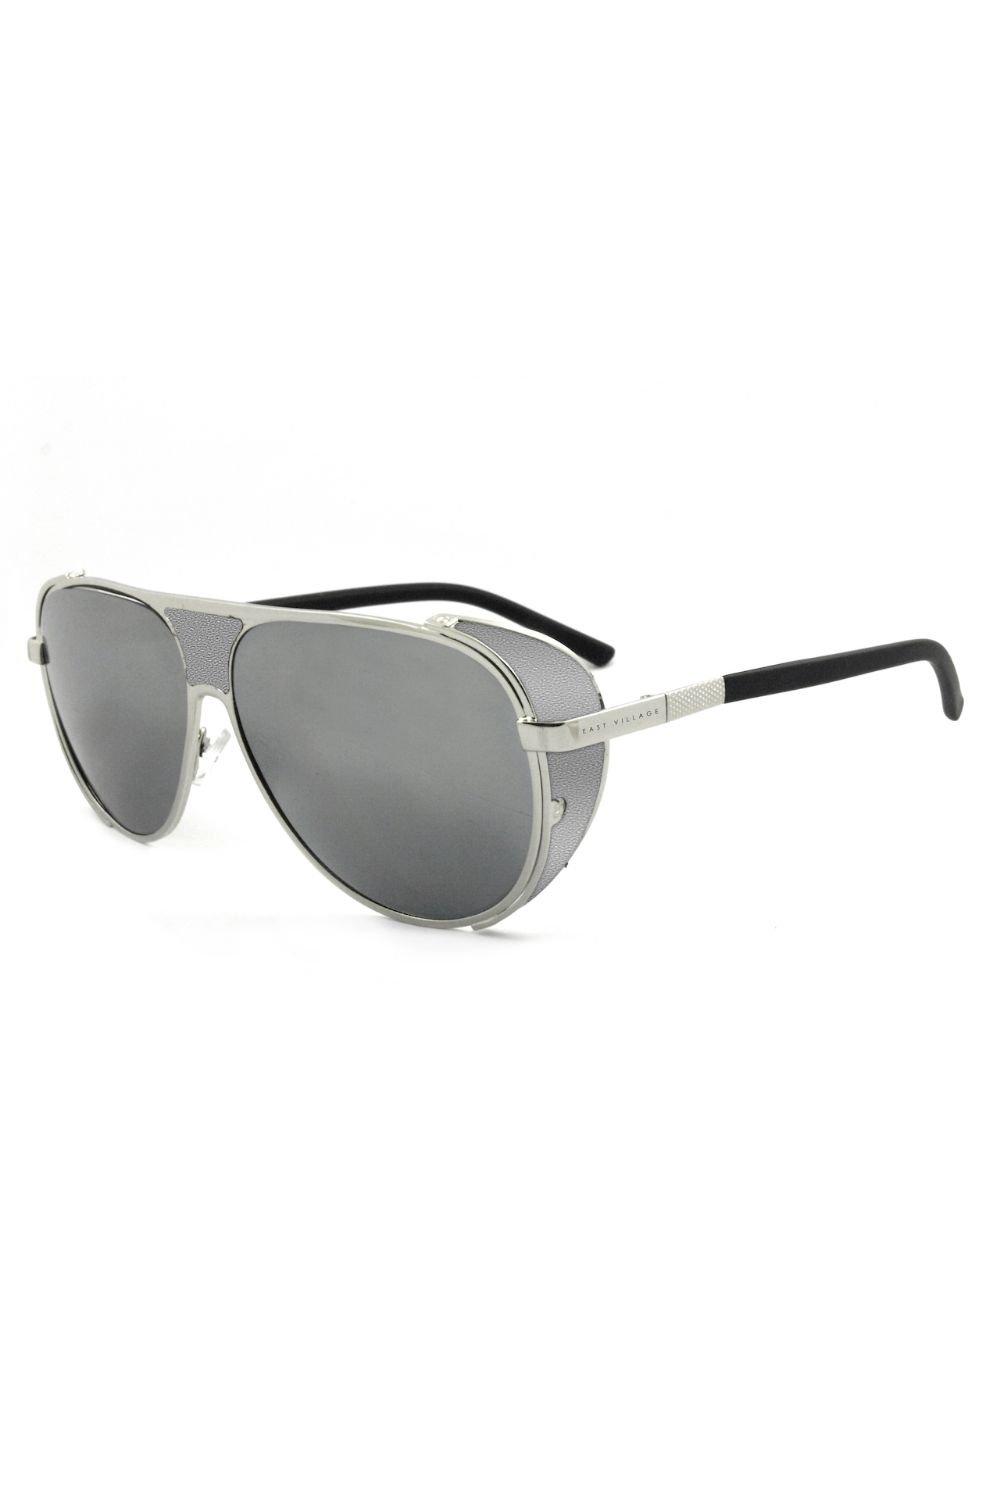 Солнцезащитные очки-авиаторы Jordan East Village, серебро kaani village